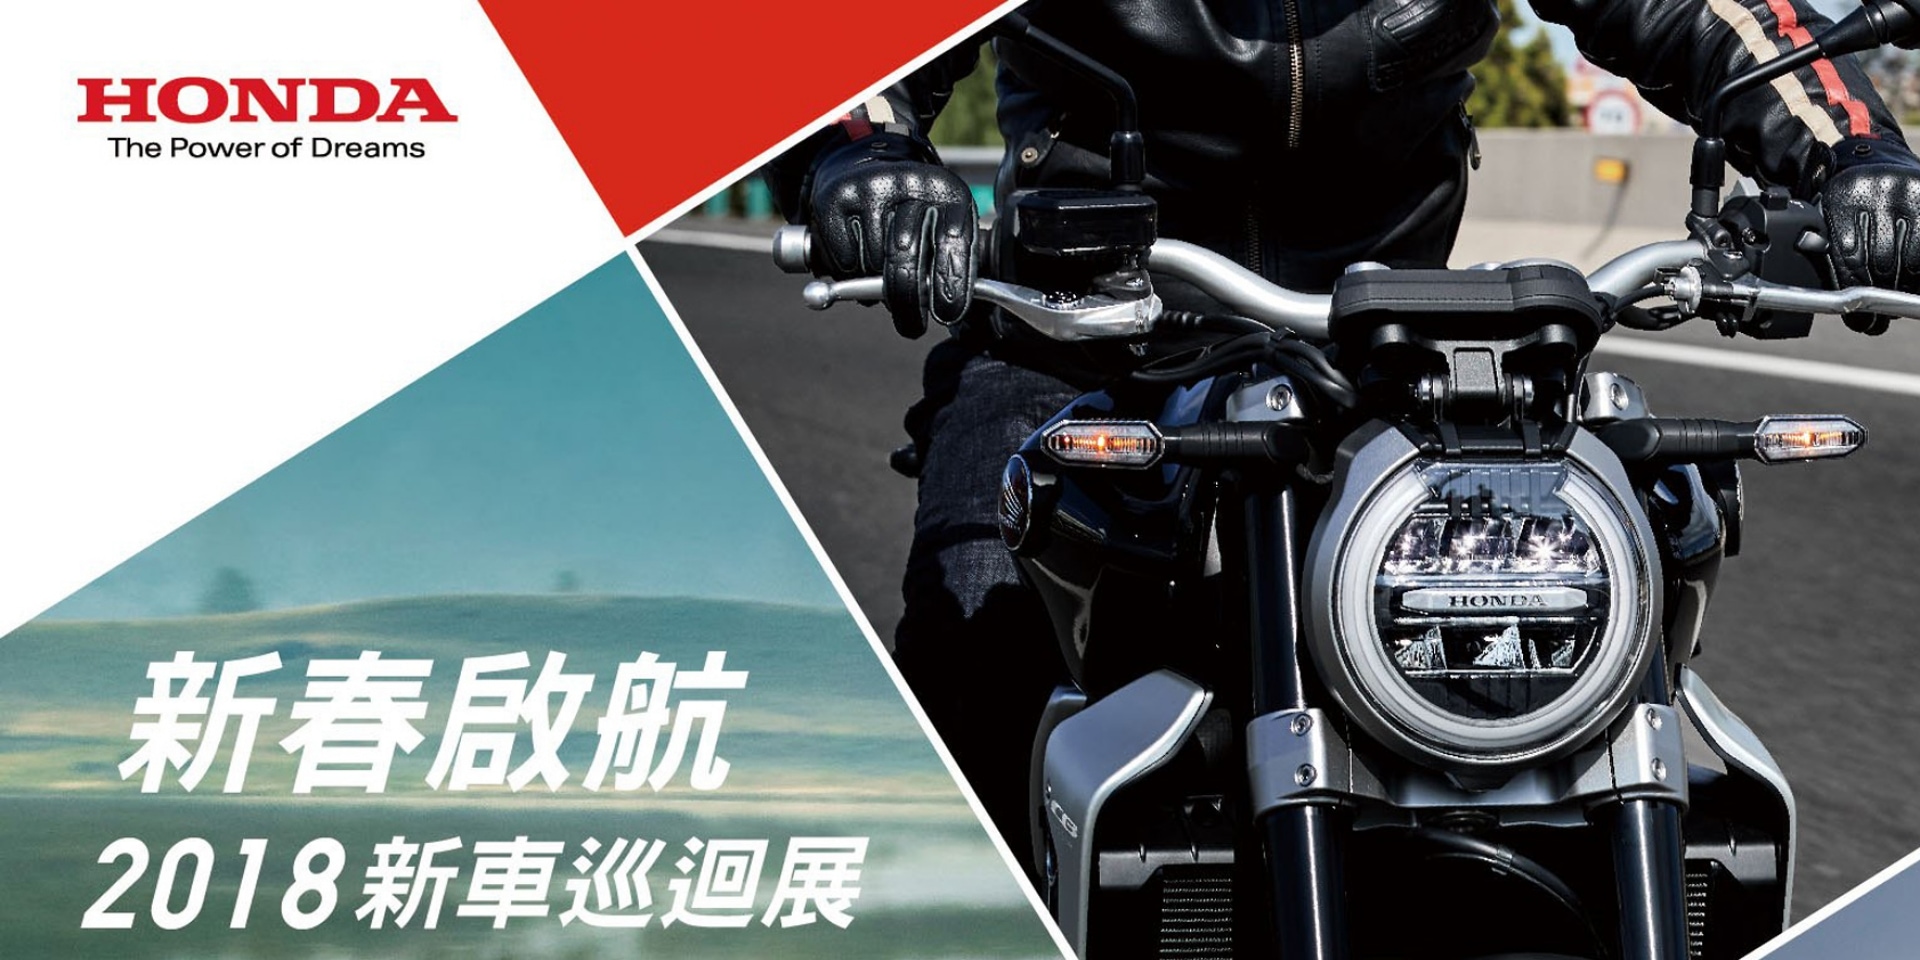 官方新聞稿。Honda Motorcycle 新春啟航 2018新車巡迴展